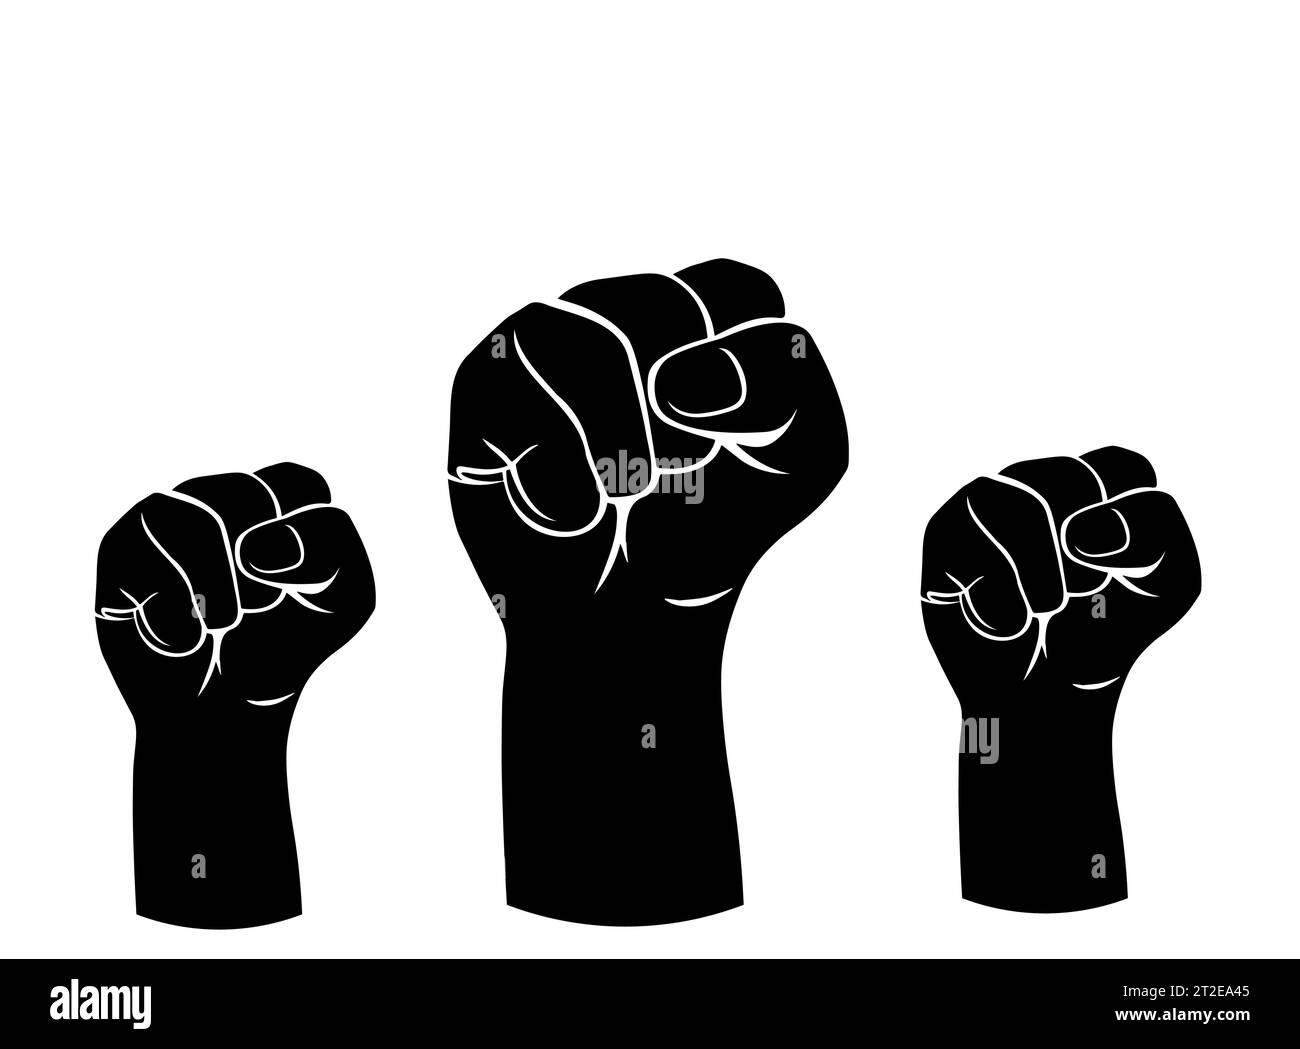 Tre pugni stringuti sollevati. Il concetto di protesta, libertà, rivoluzione, lotta per i diritti umani, unificazione e fratellanza. Isolato. Vettore Illustrazione Vettoriale